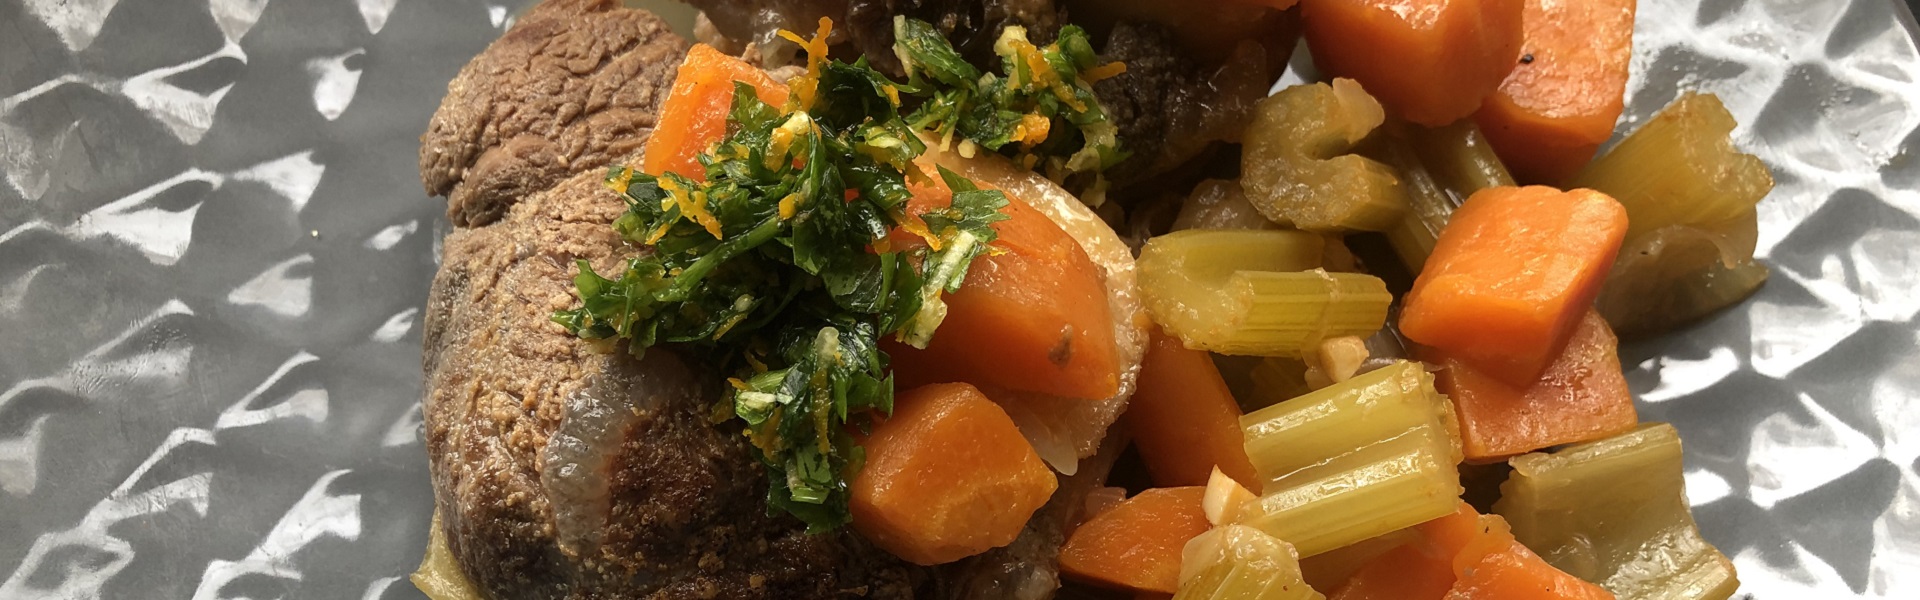 Готовит Наташа: томленая говядина с апельсиновой гремолатой от Гордона Рамзи